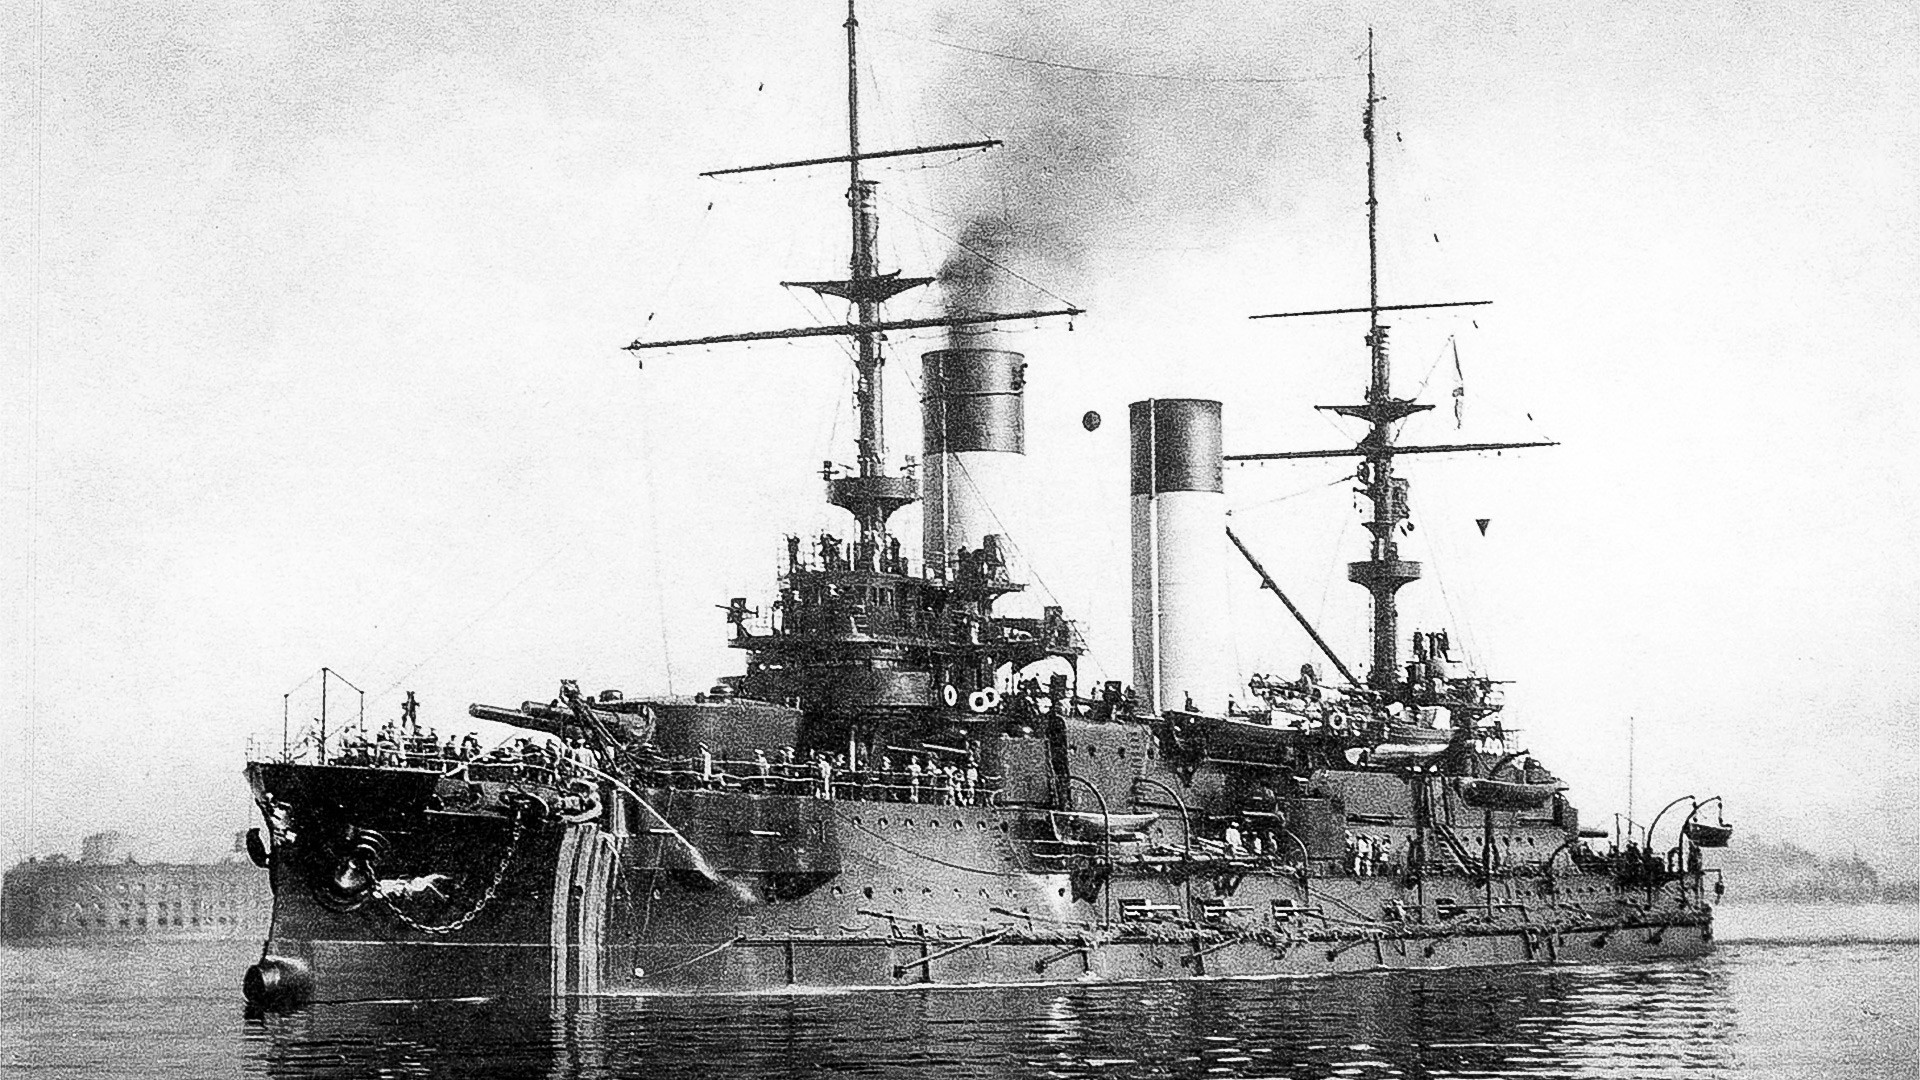  クロンシュタットの投錨地での戦艦「オリョール」。1904年8月。
